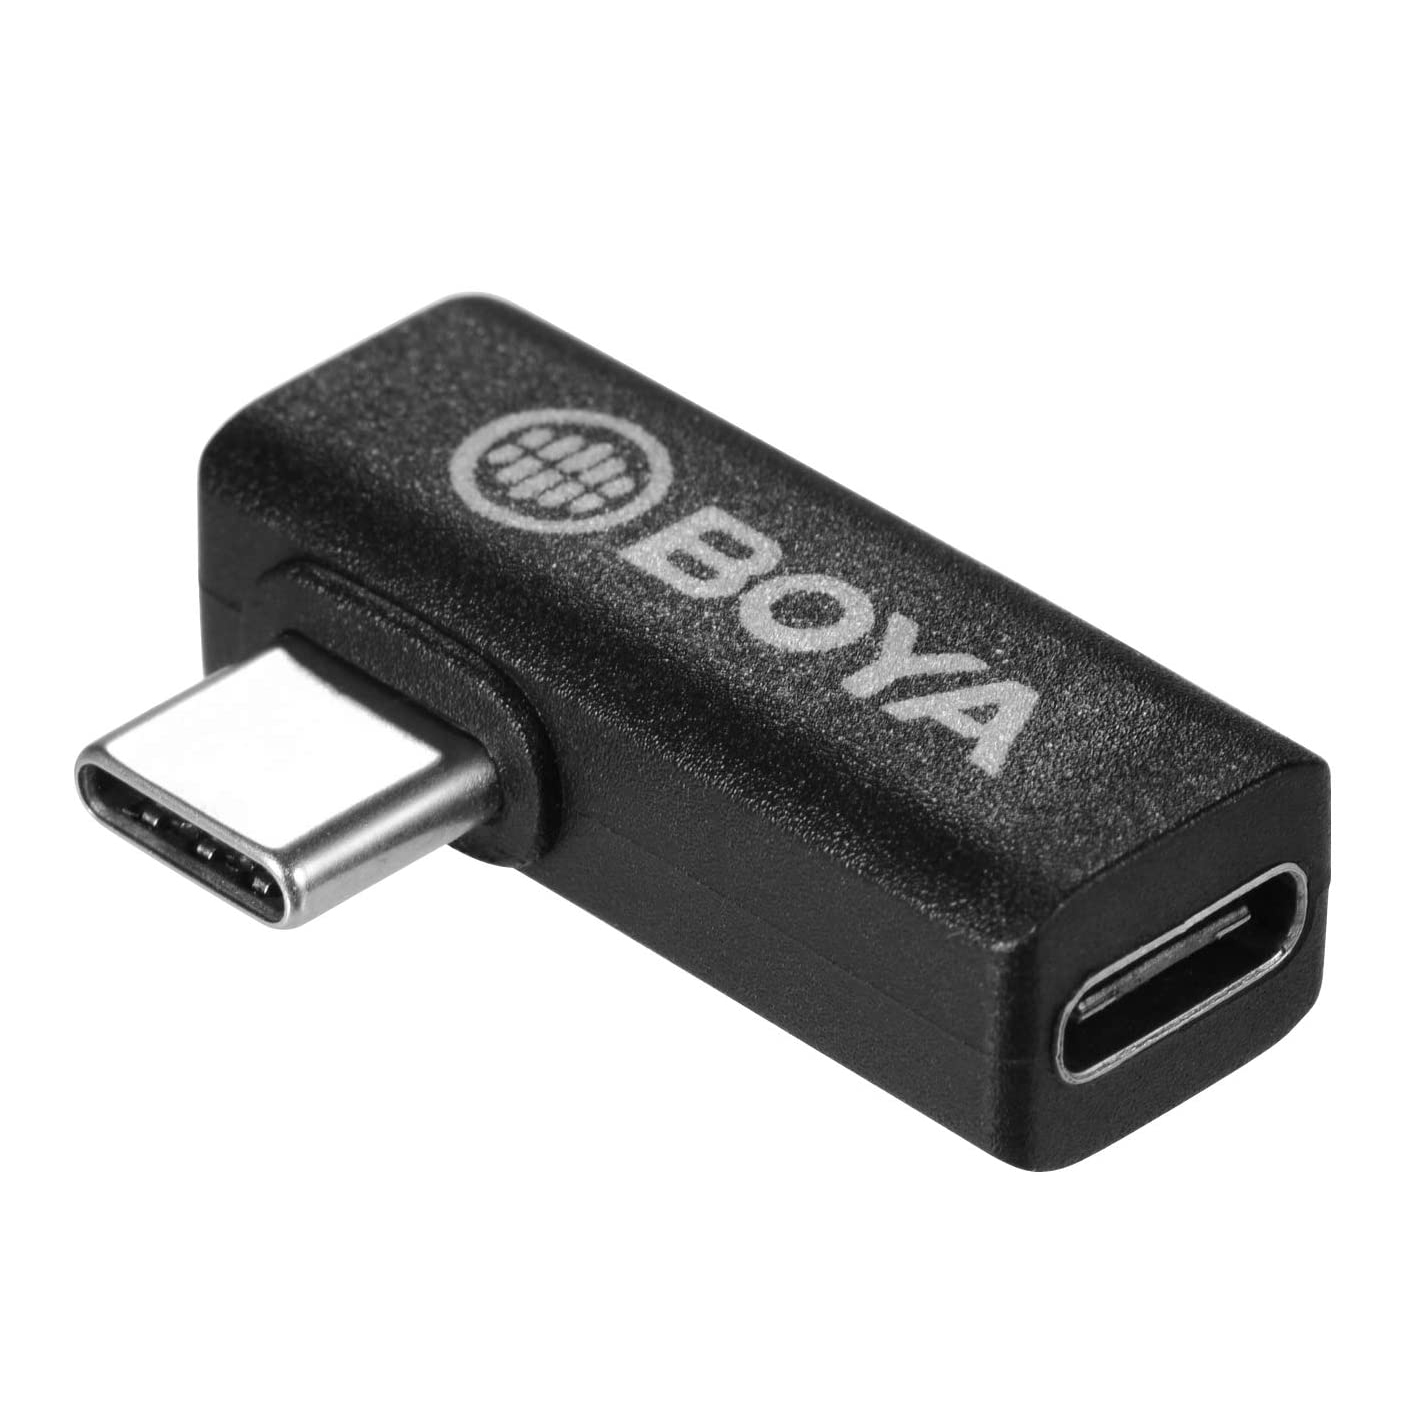 Adaptador en ‘L’ Boya BY-K5, USB-C Macho a USB-C Hembra